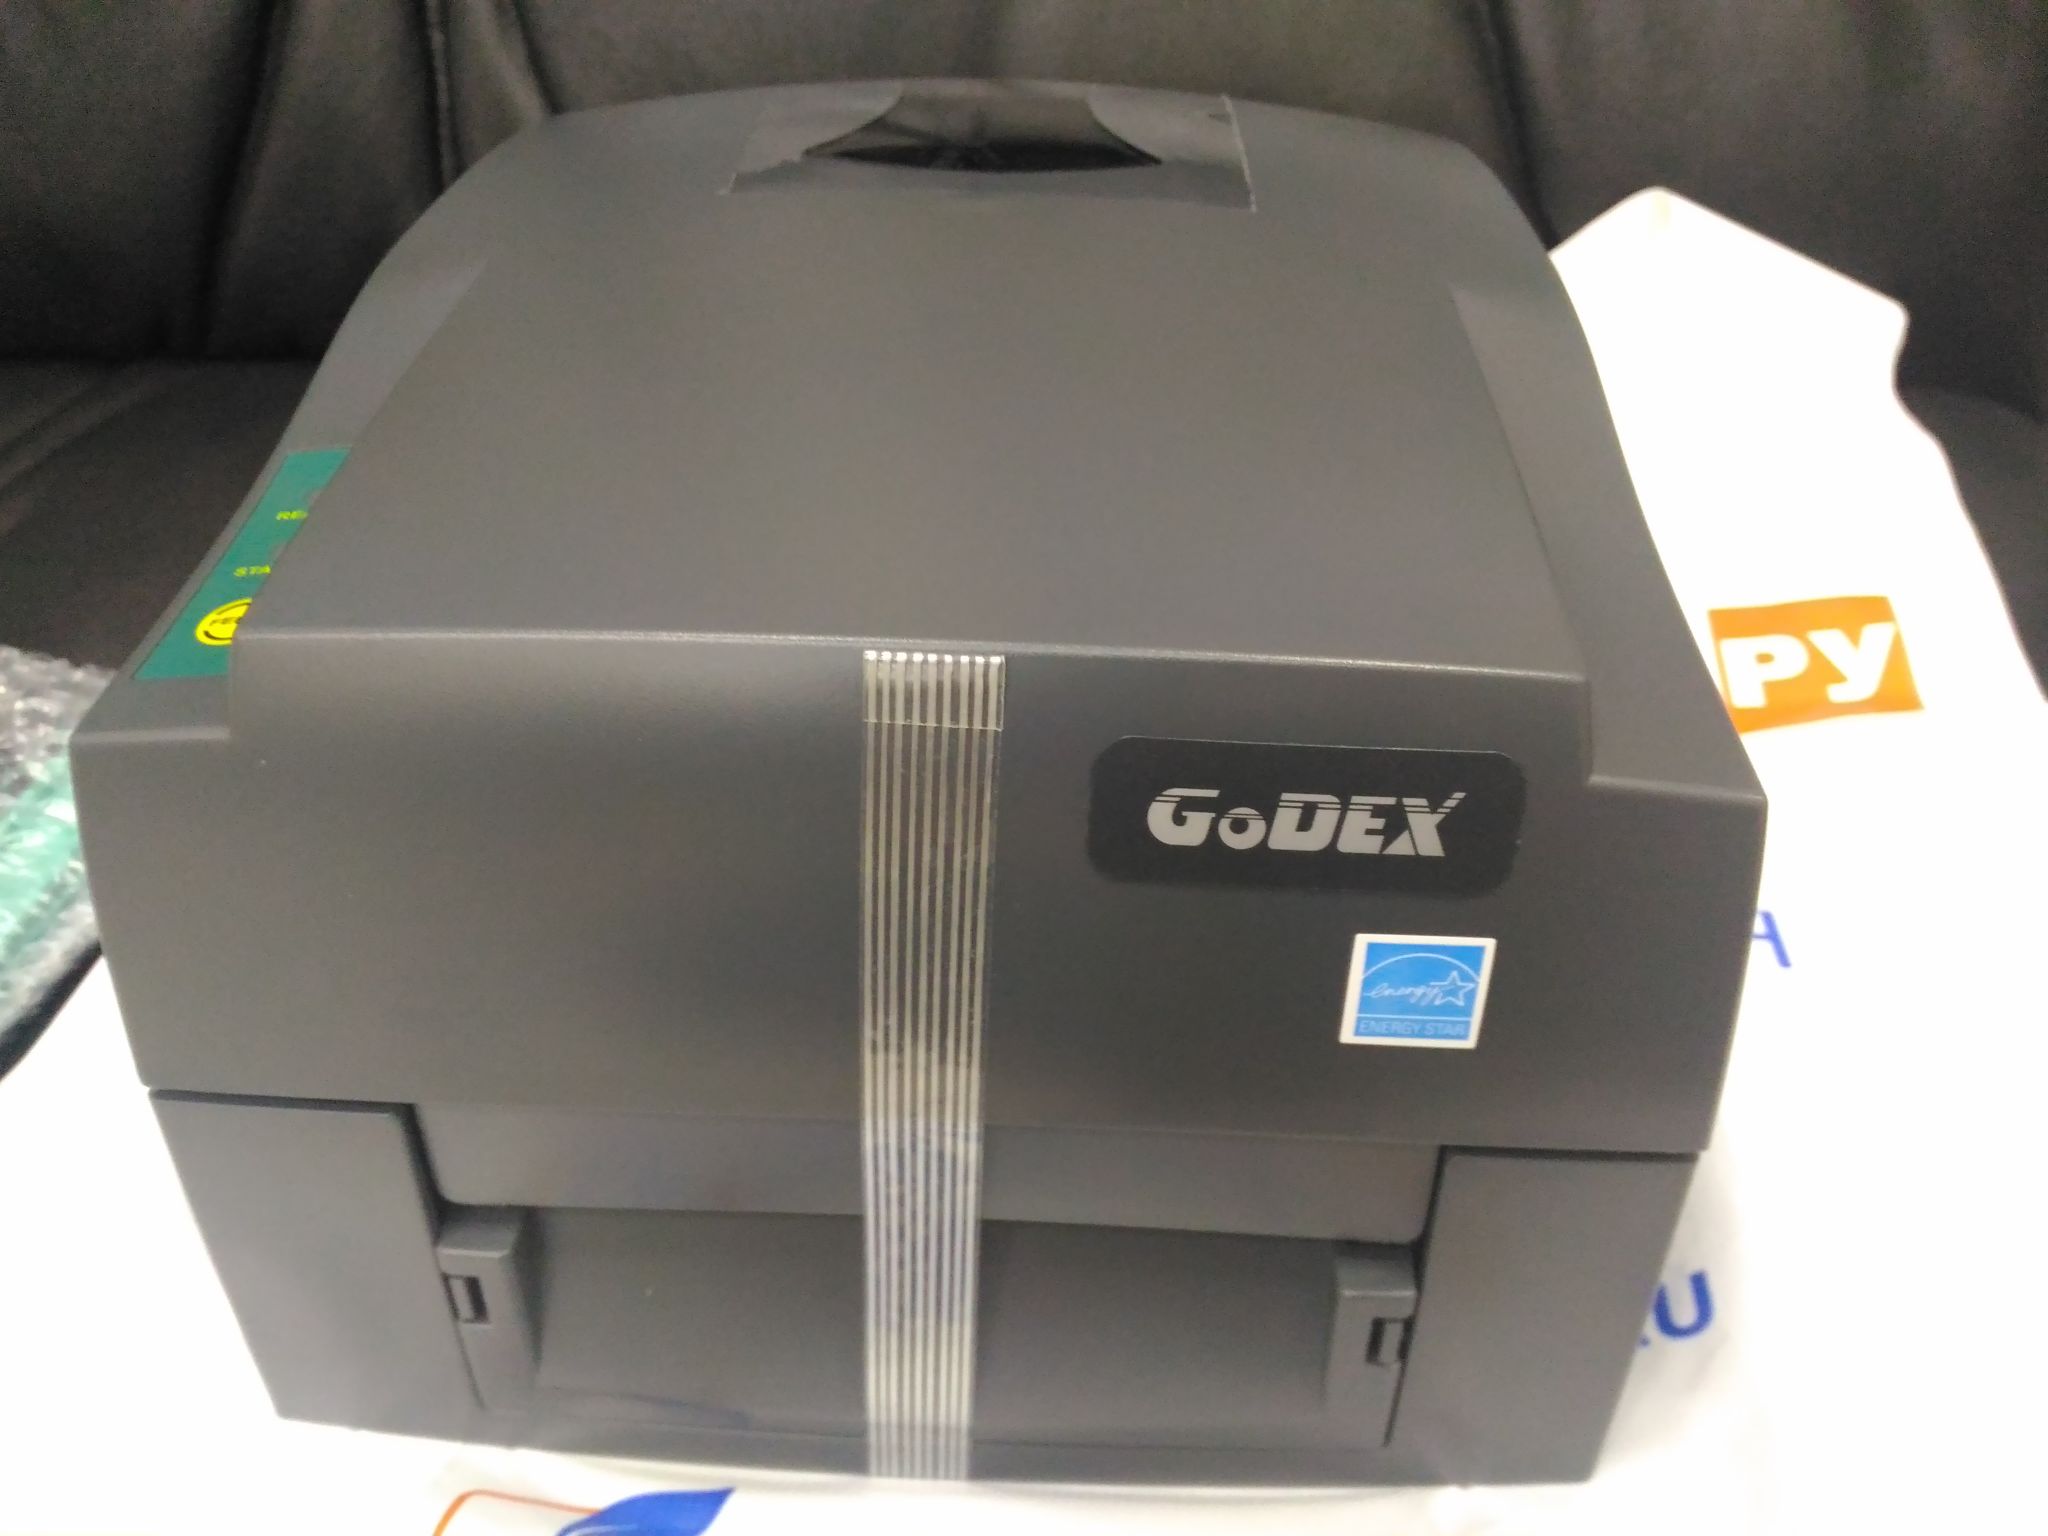 Godex g530 этикетки